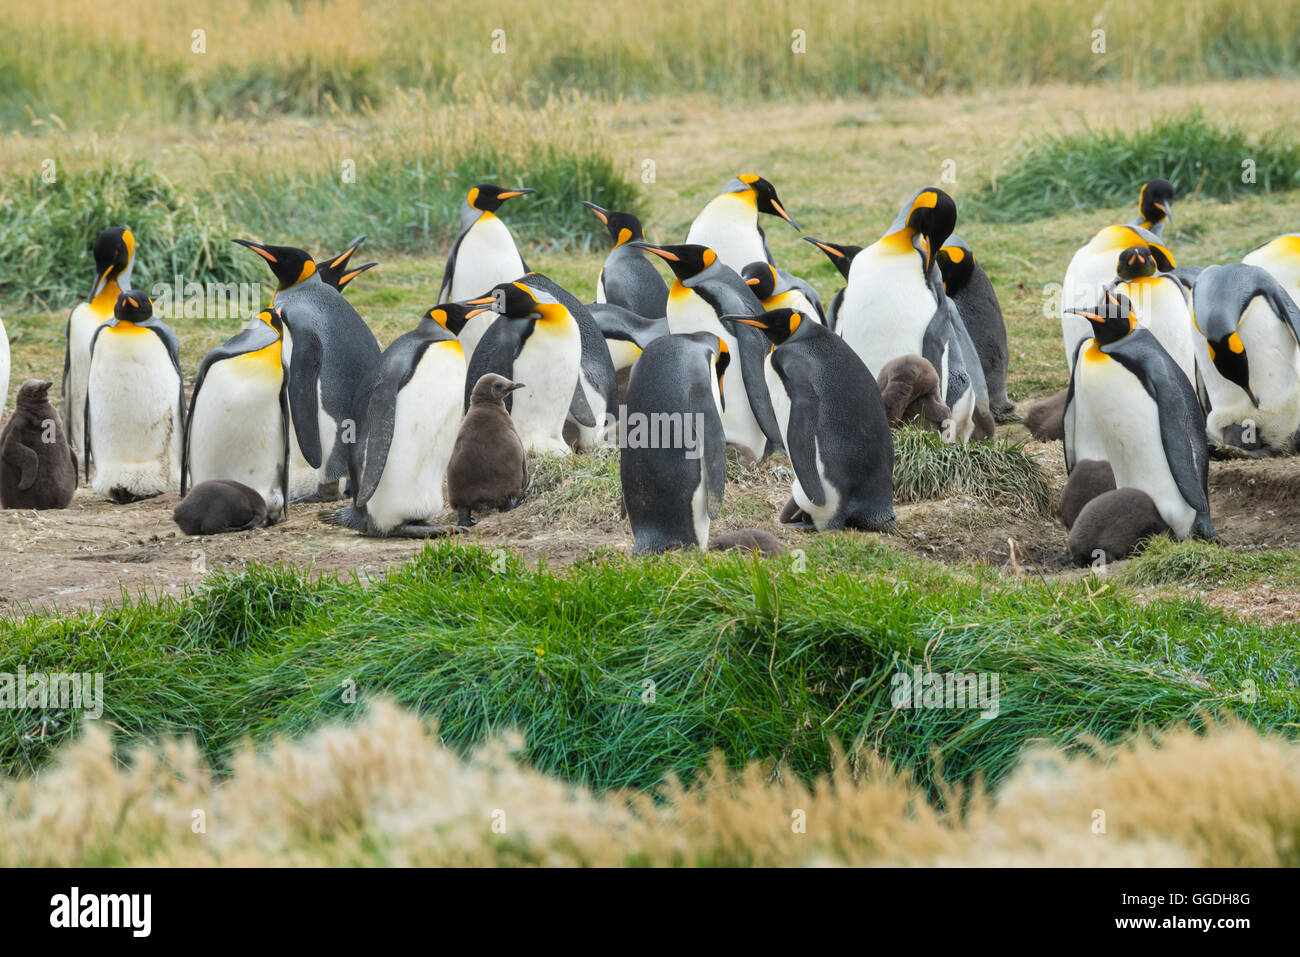 South America, Chile, Tierra del Fuego, Penguin colony Stock Photo